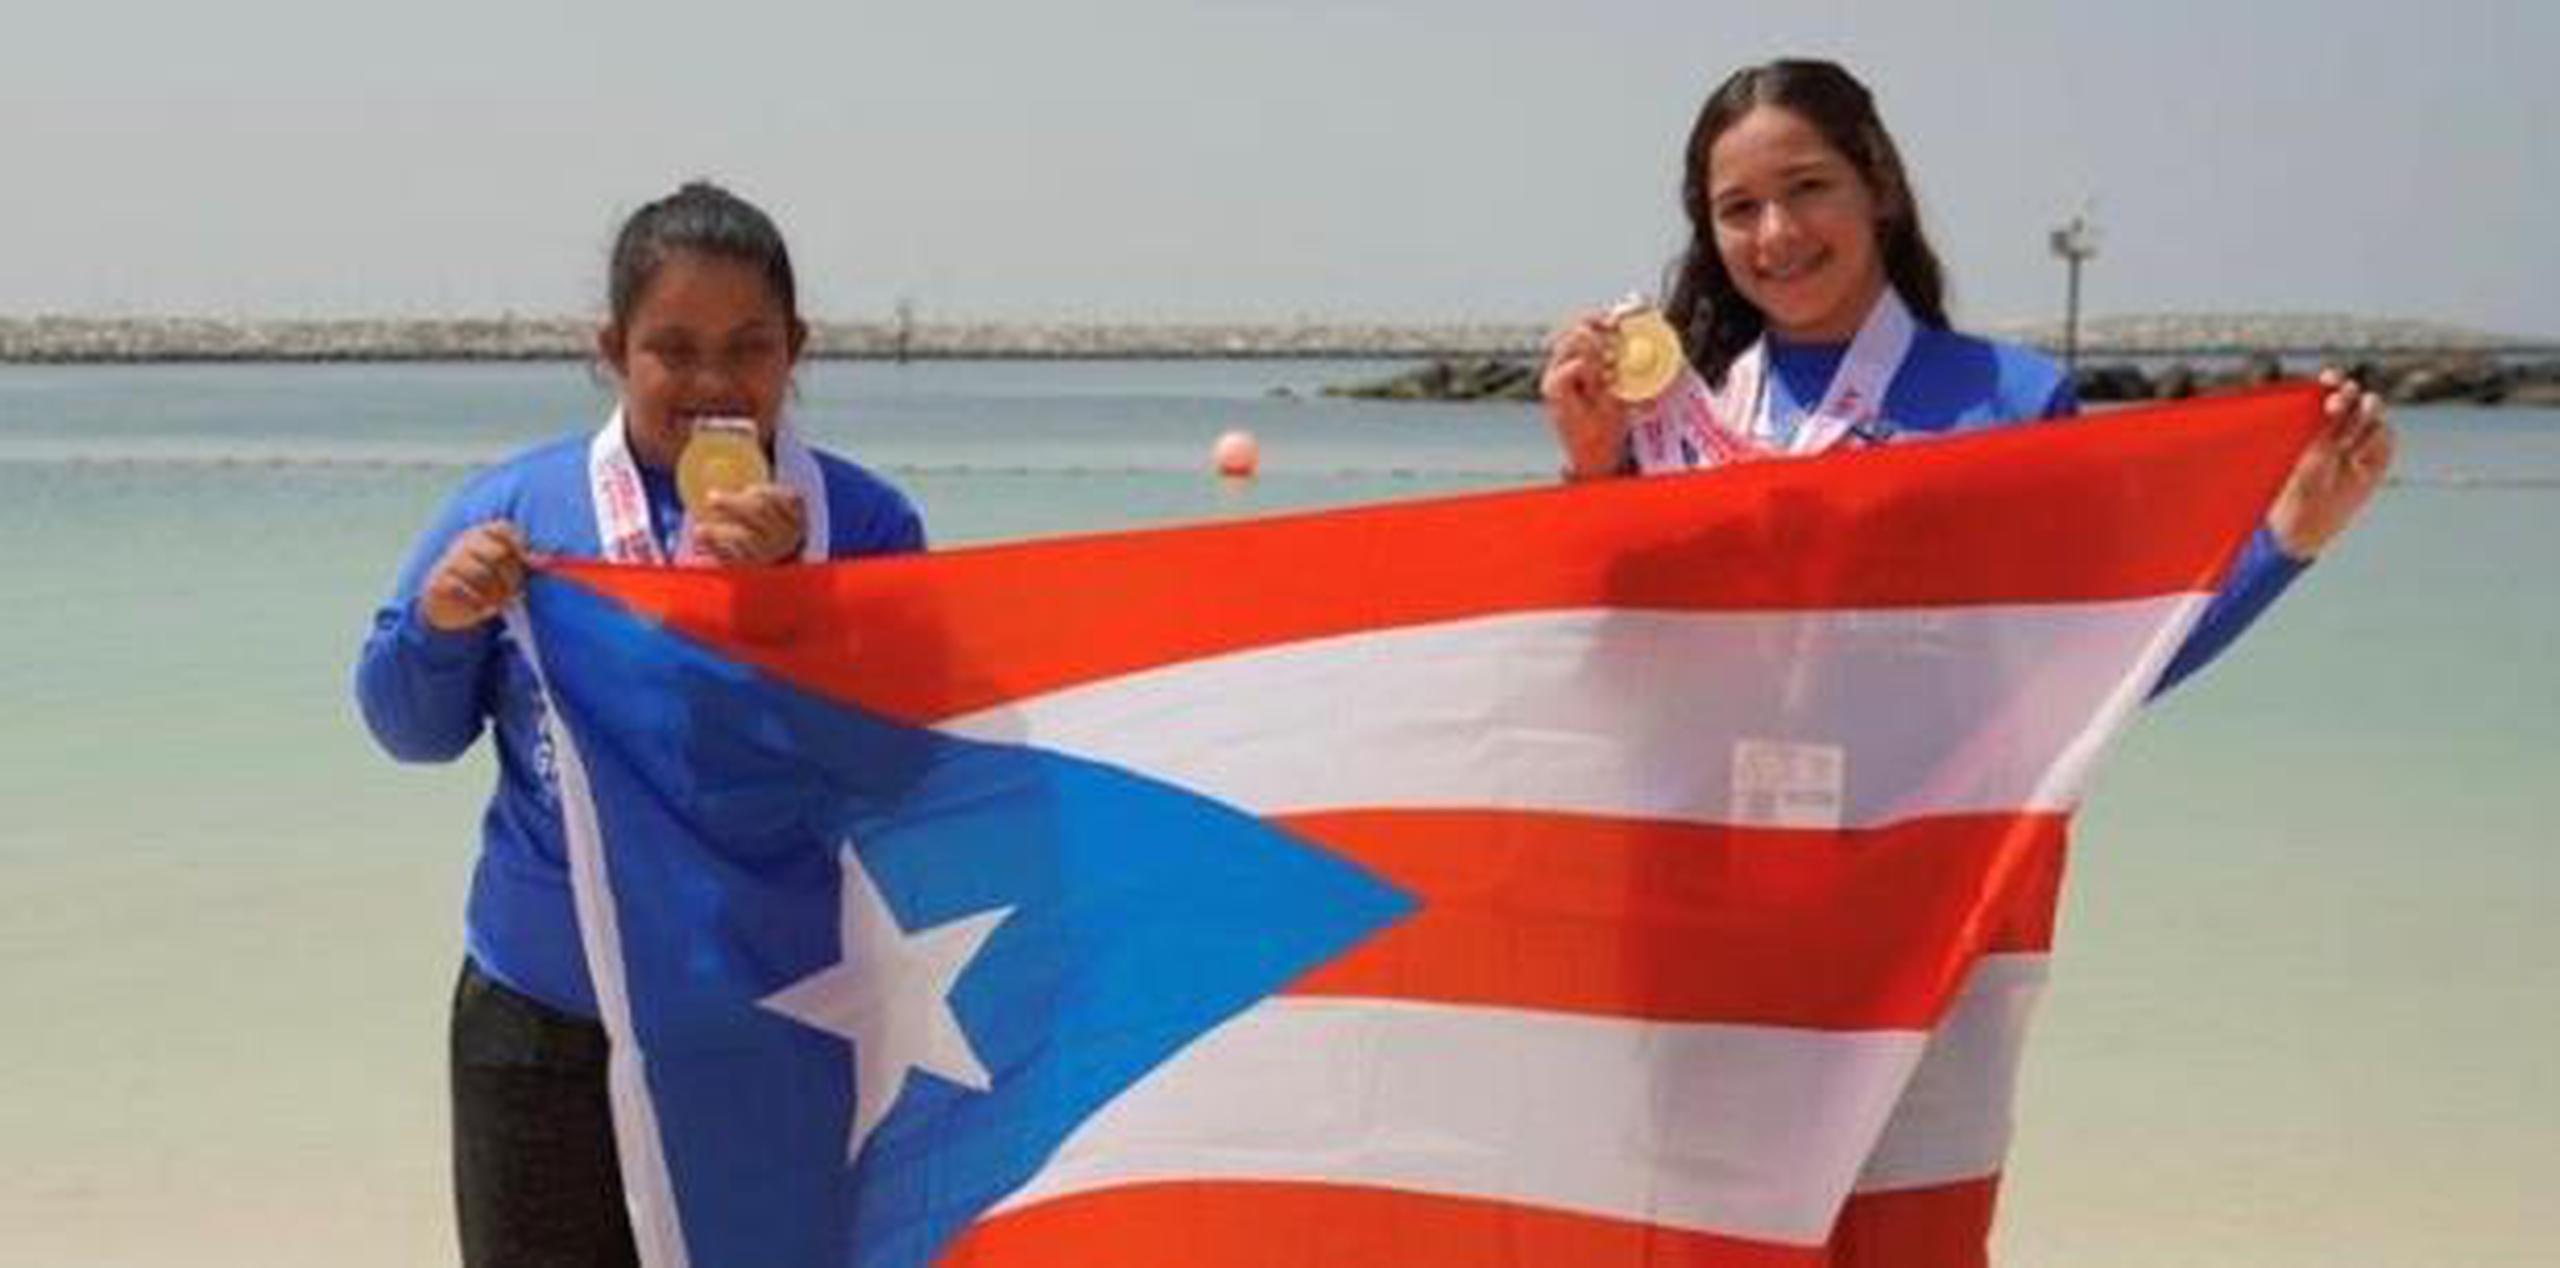 González y Rico se tiraron al agua de la playa La Mer en Dubai, y en ese escenario consiguieron el primer metal dorado para Puerto Rico al registrar tiempo de 23:33.00. (Suministrada)